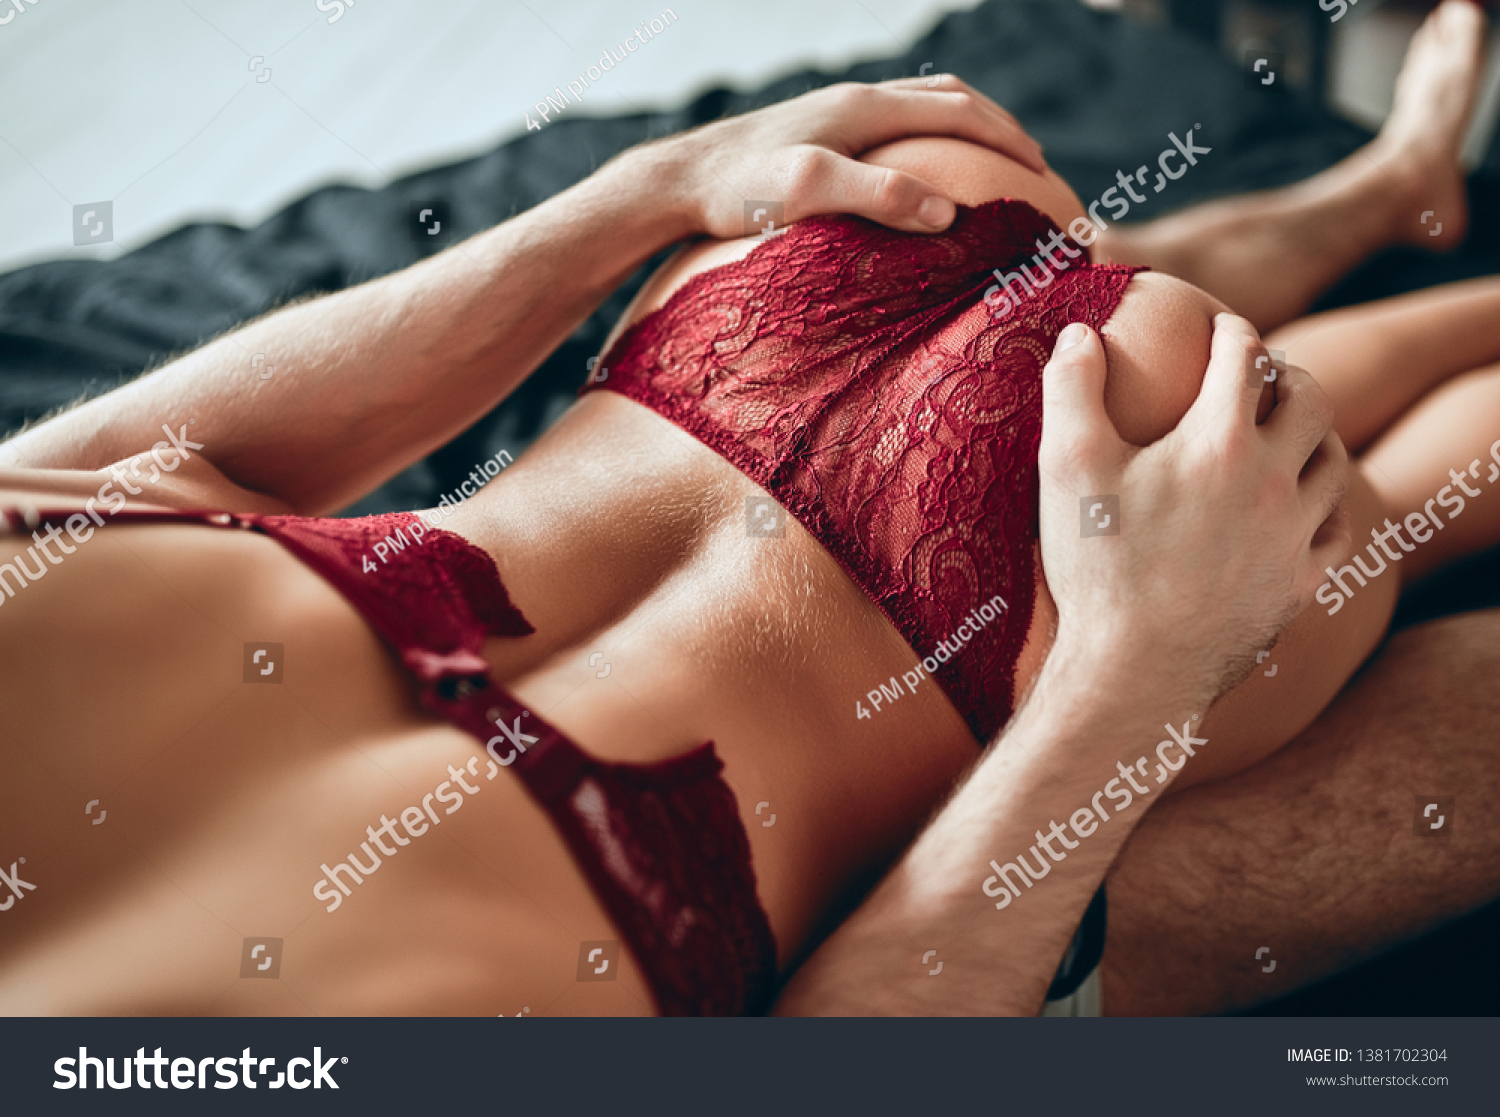 Dark hot sex erotic